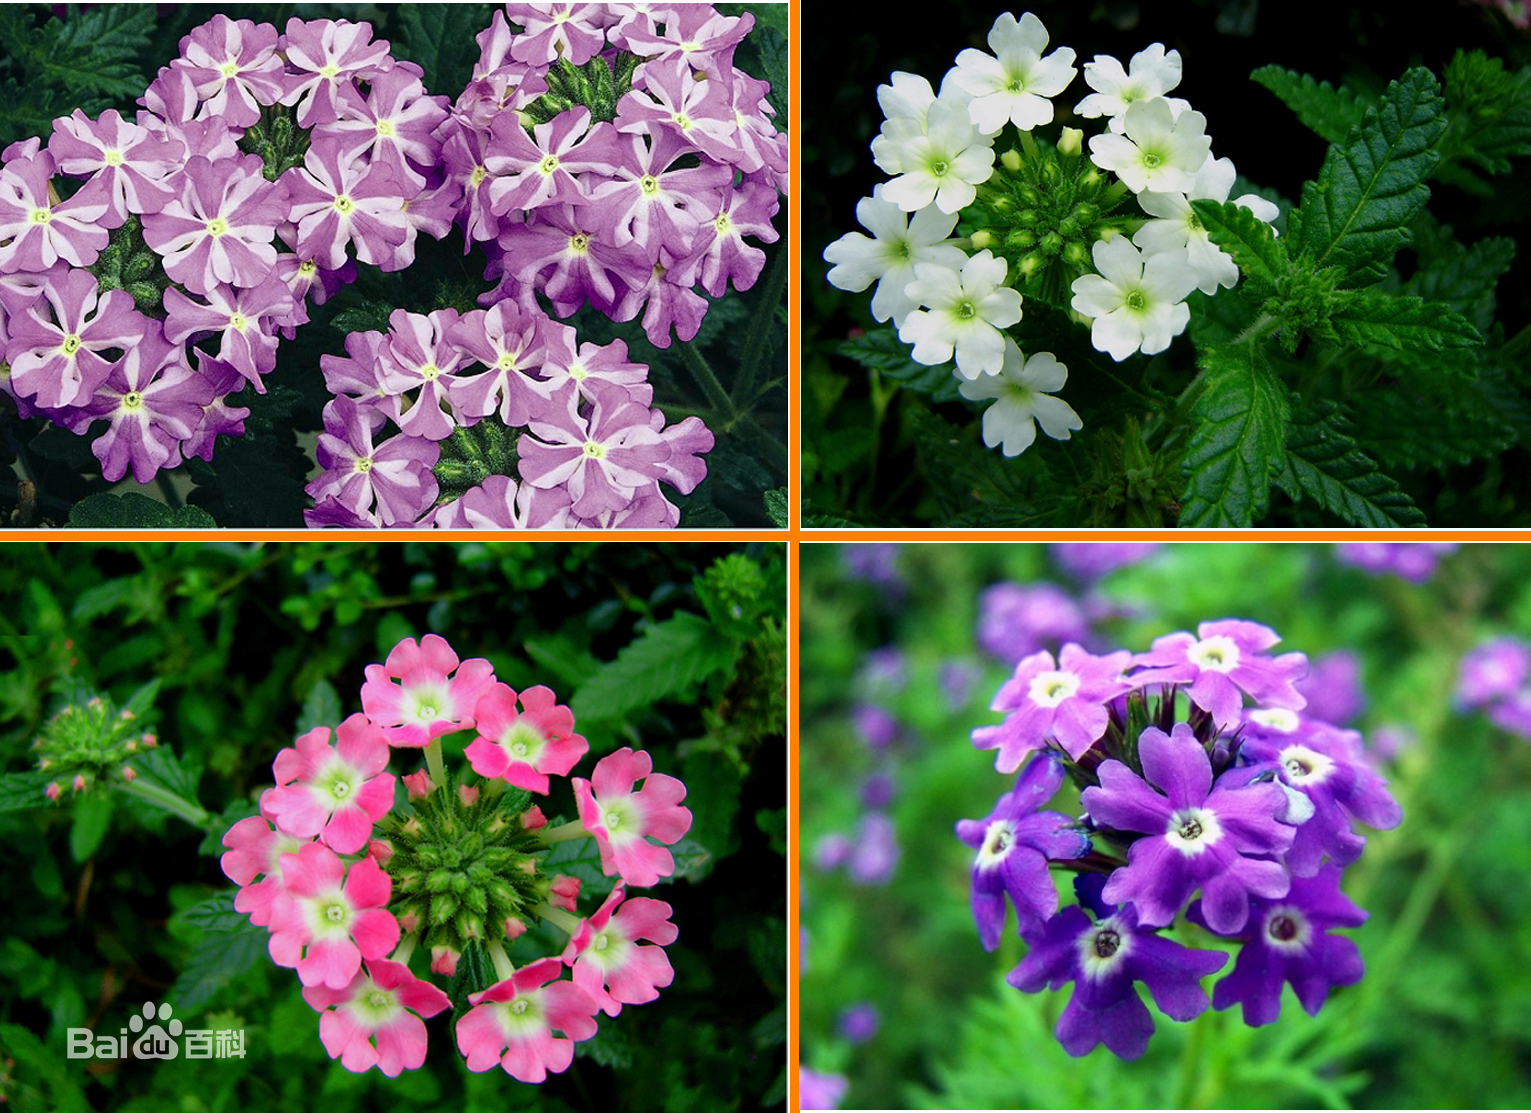 夏天盛开的花朵有哪几种？你都见过吗？